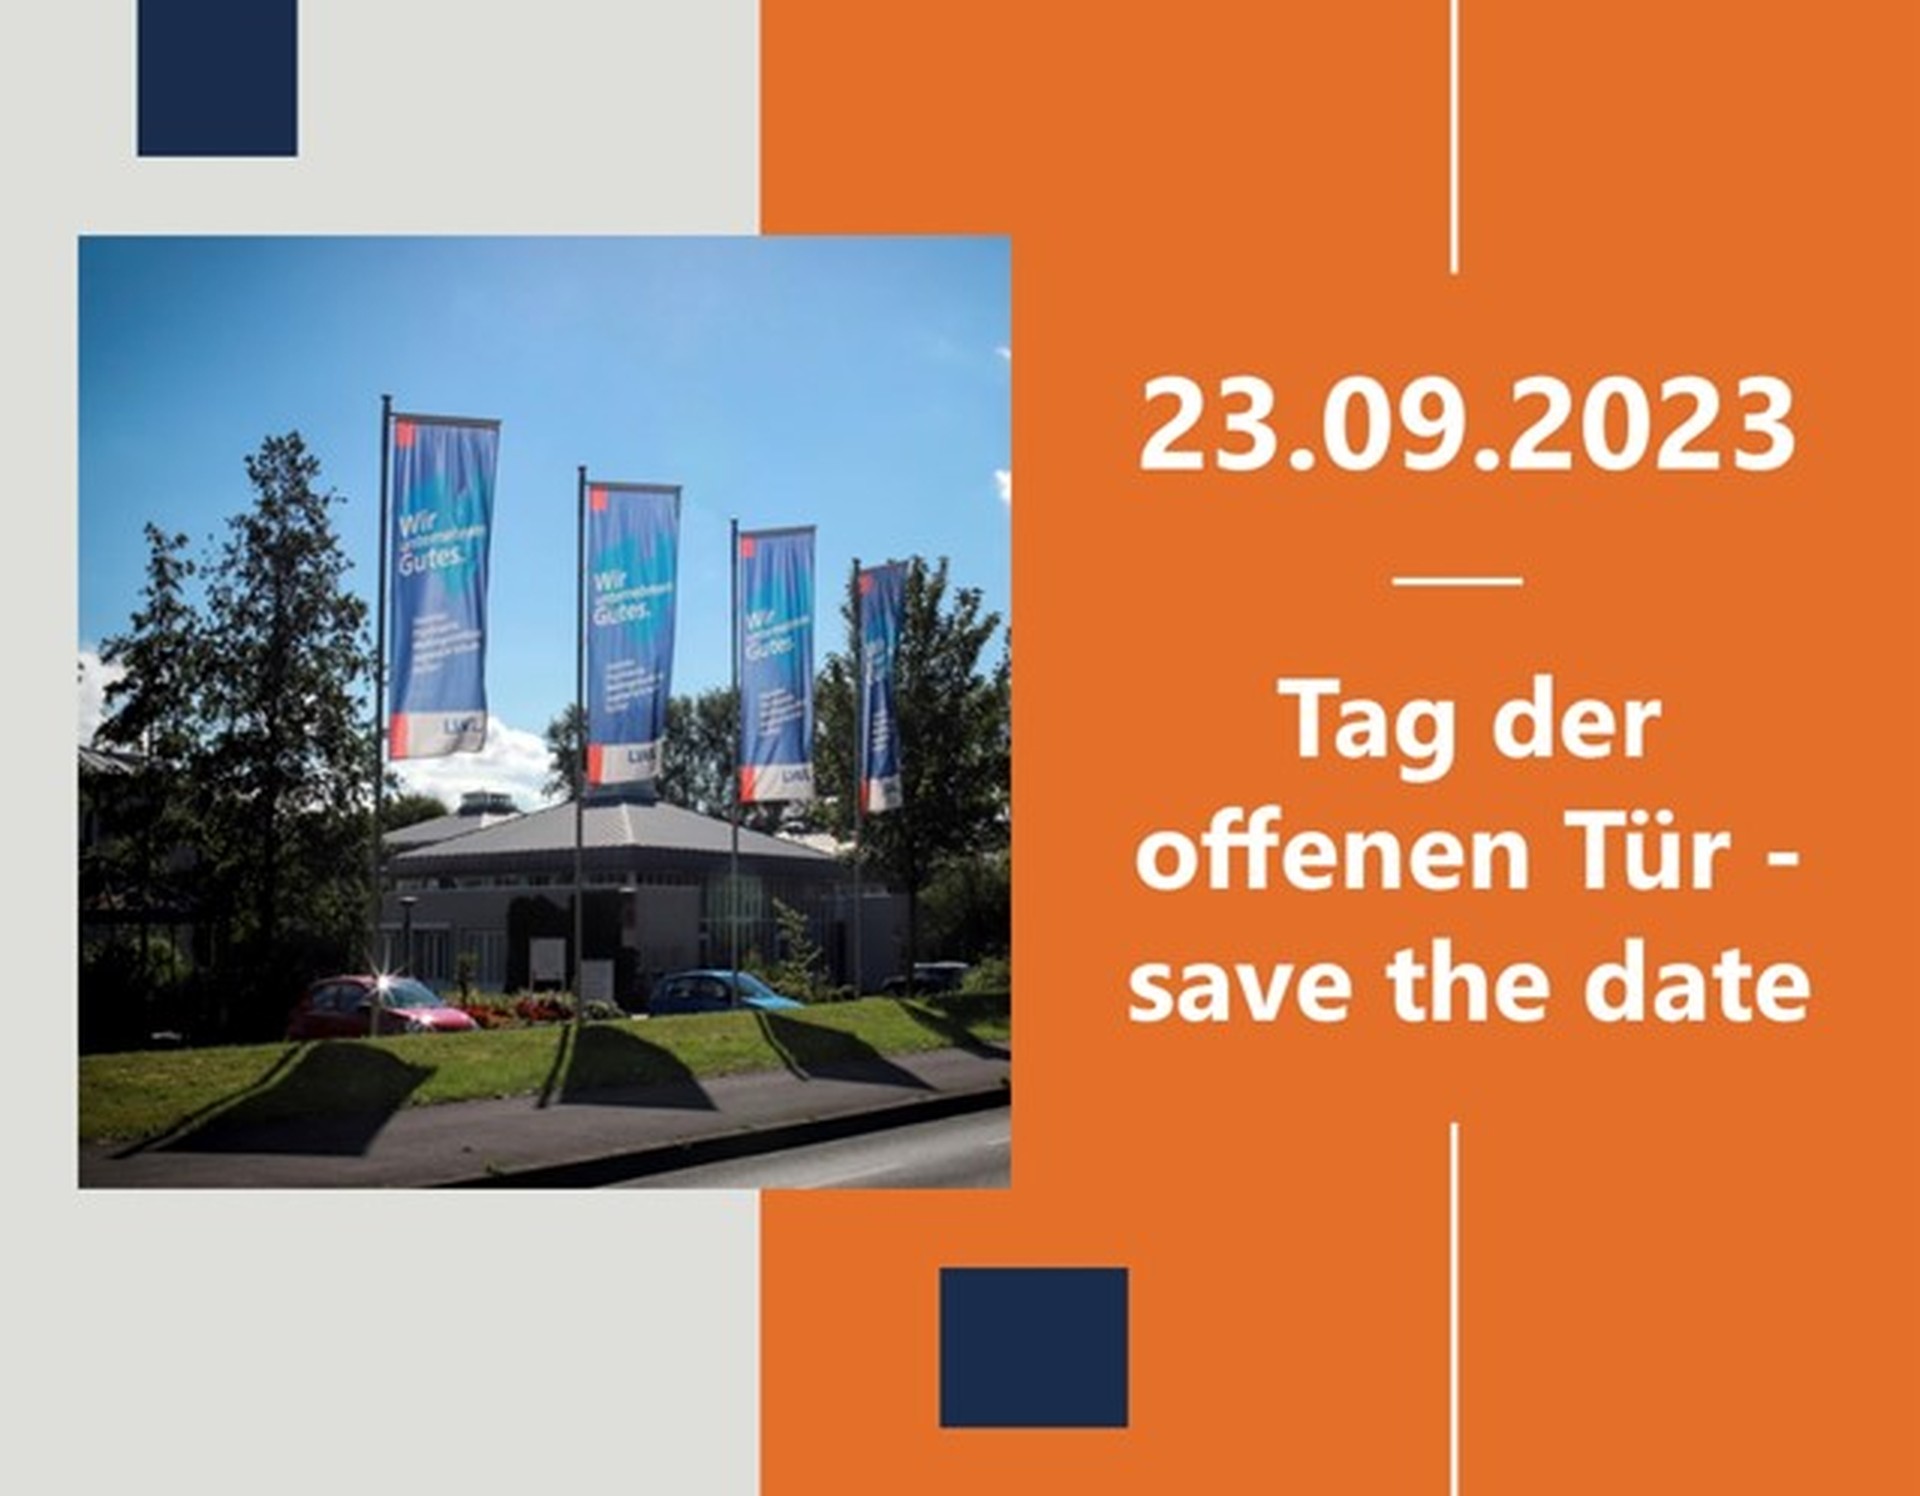 Das Bildungszentrum von außen mit dem Text: 23.09.2023: Tag der offenen Tür – save the date